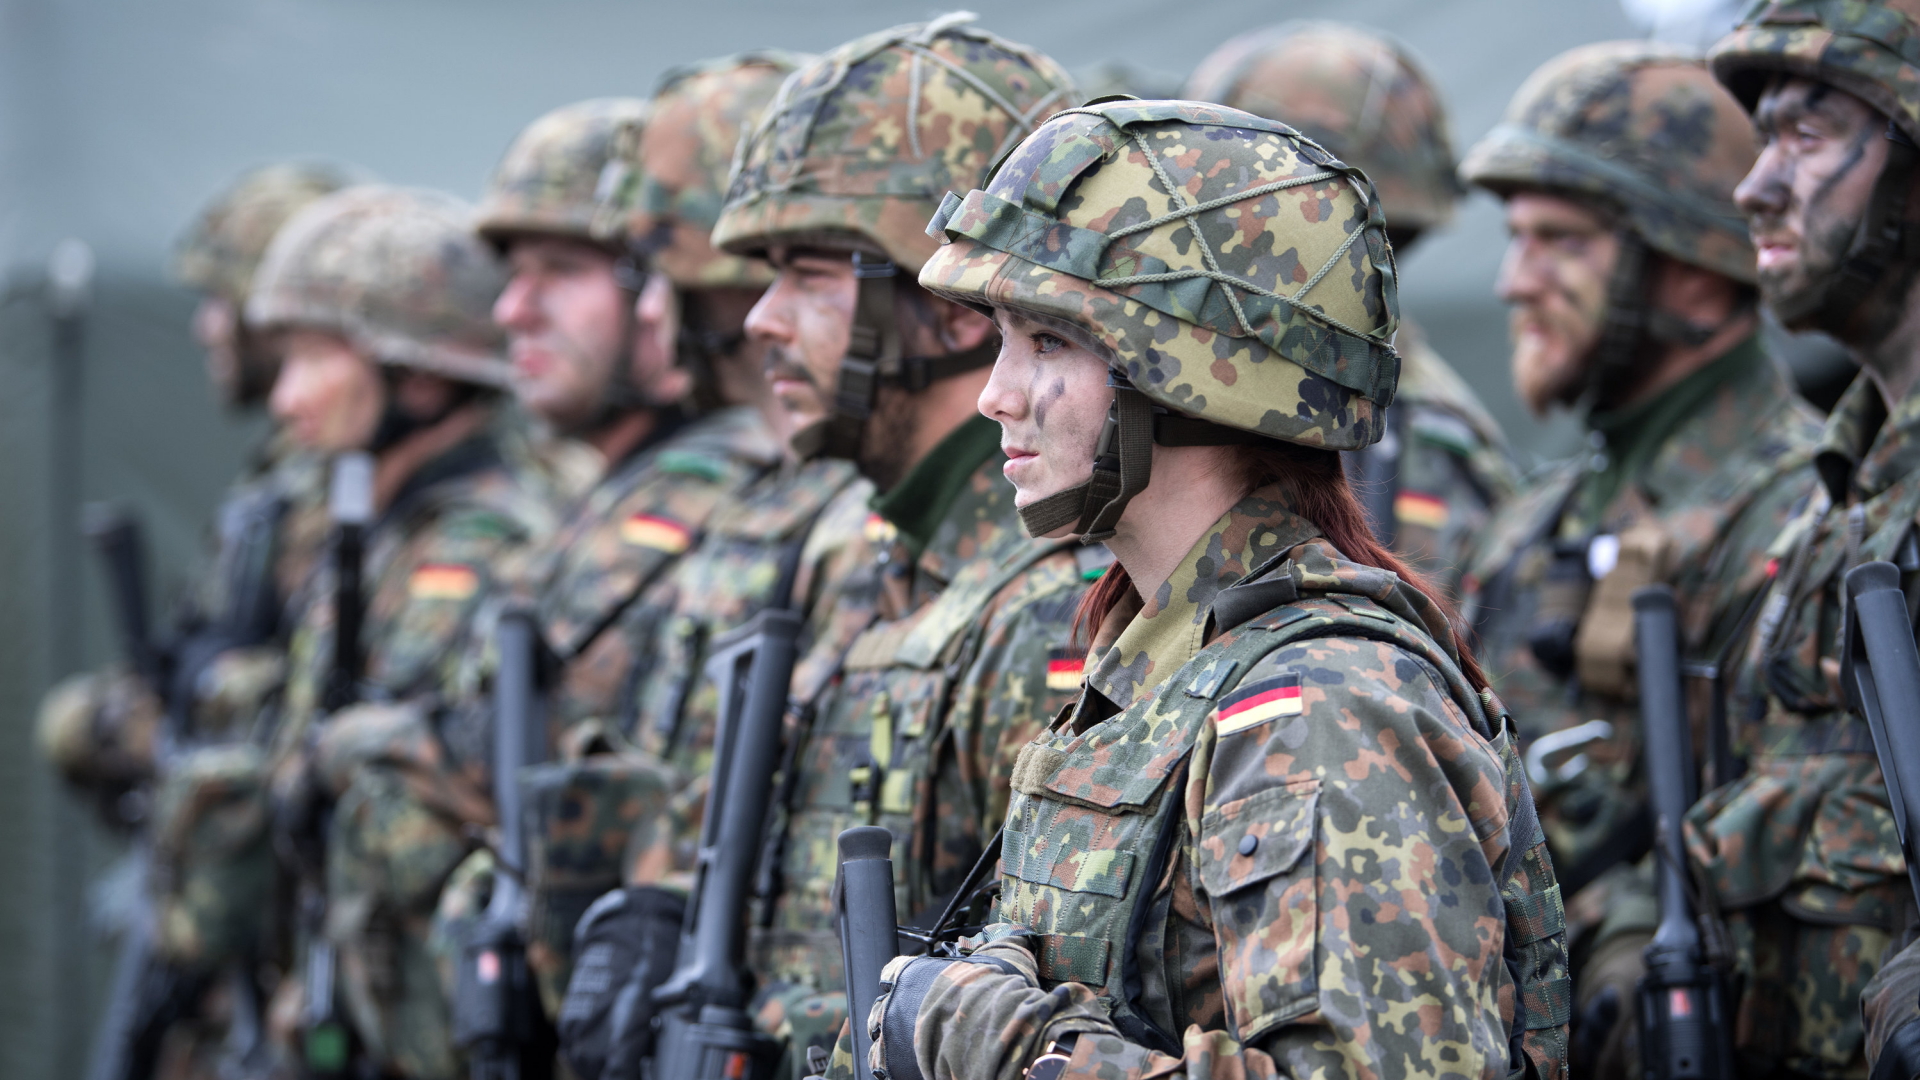 Soldaten der Bundeswehr auf dem Militärstützpunkt in Rukla, Litauen | dpa